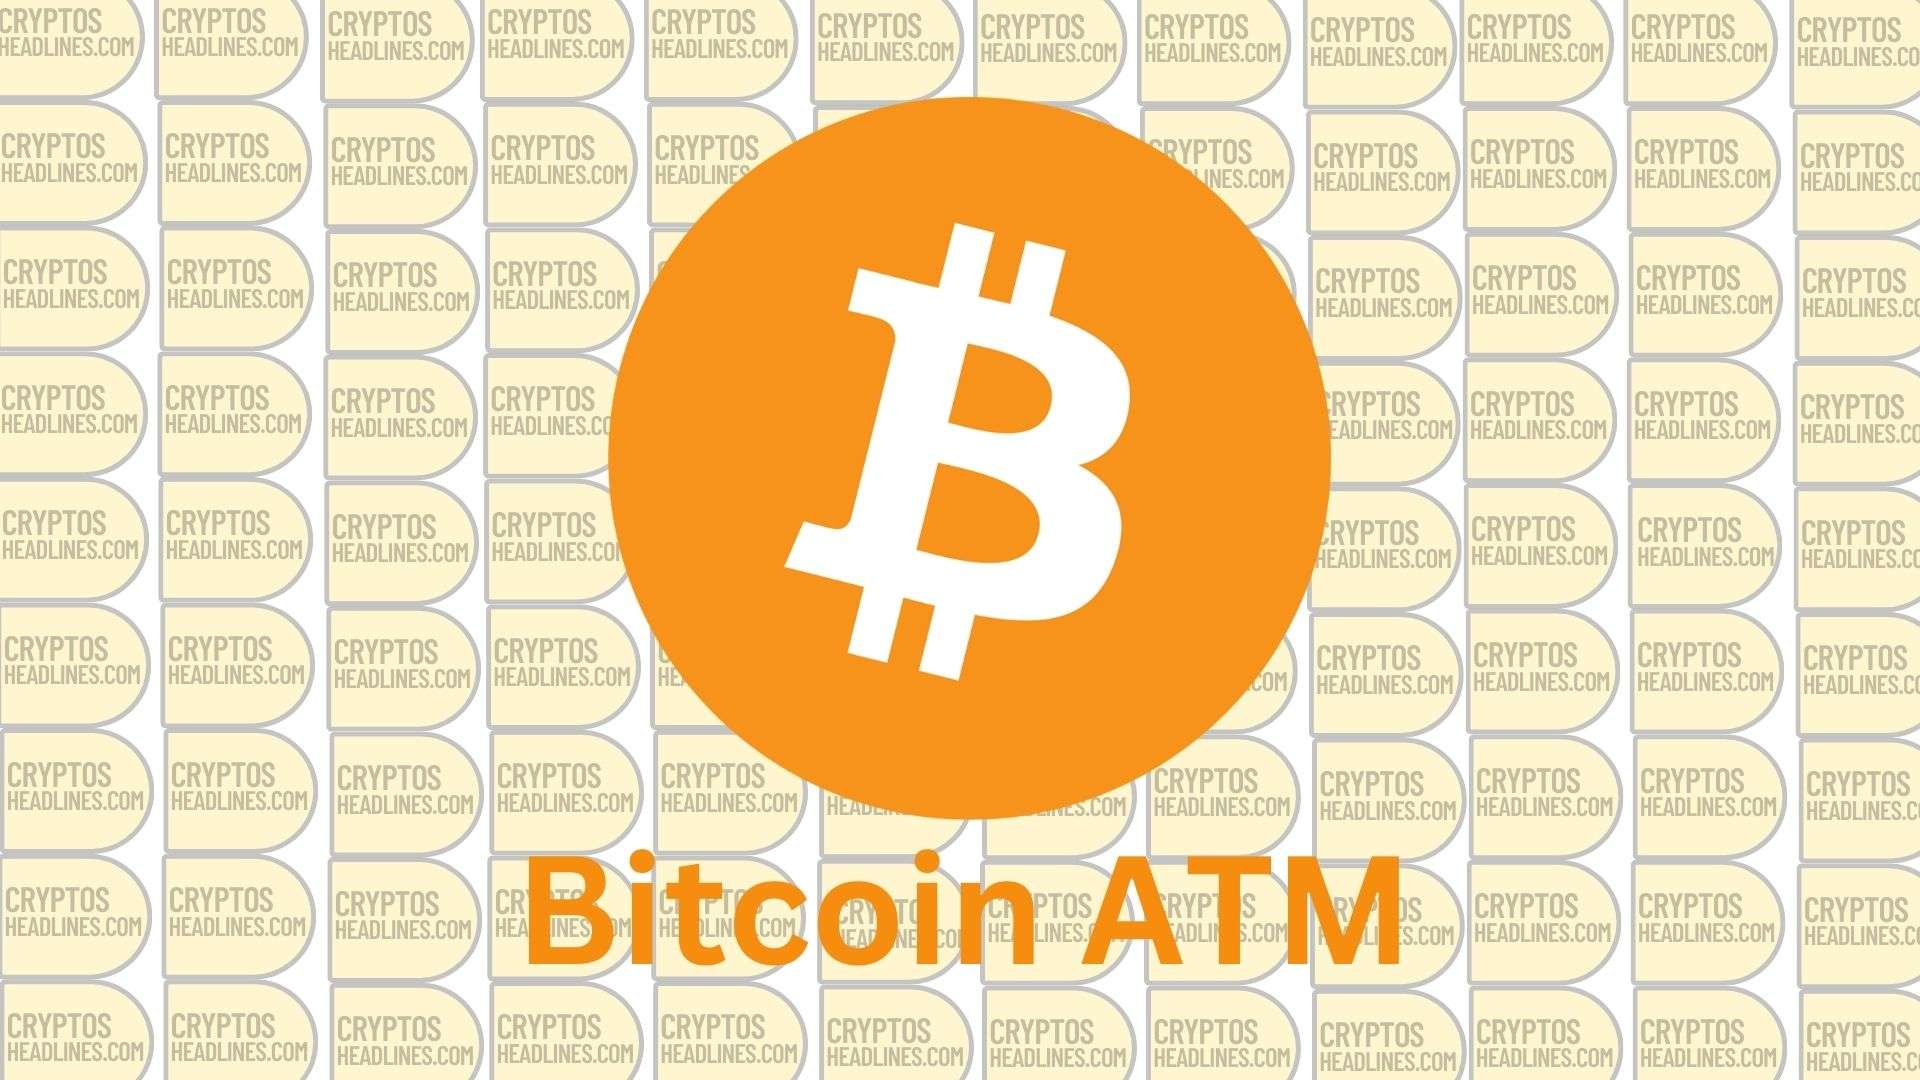 Crypto ATM Bitcoin ATM